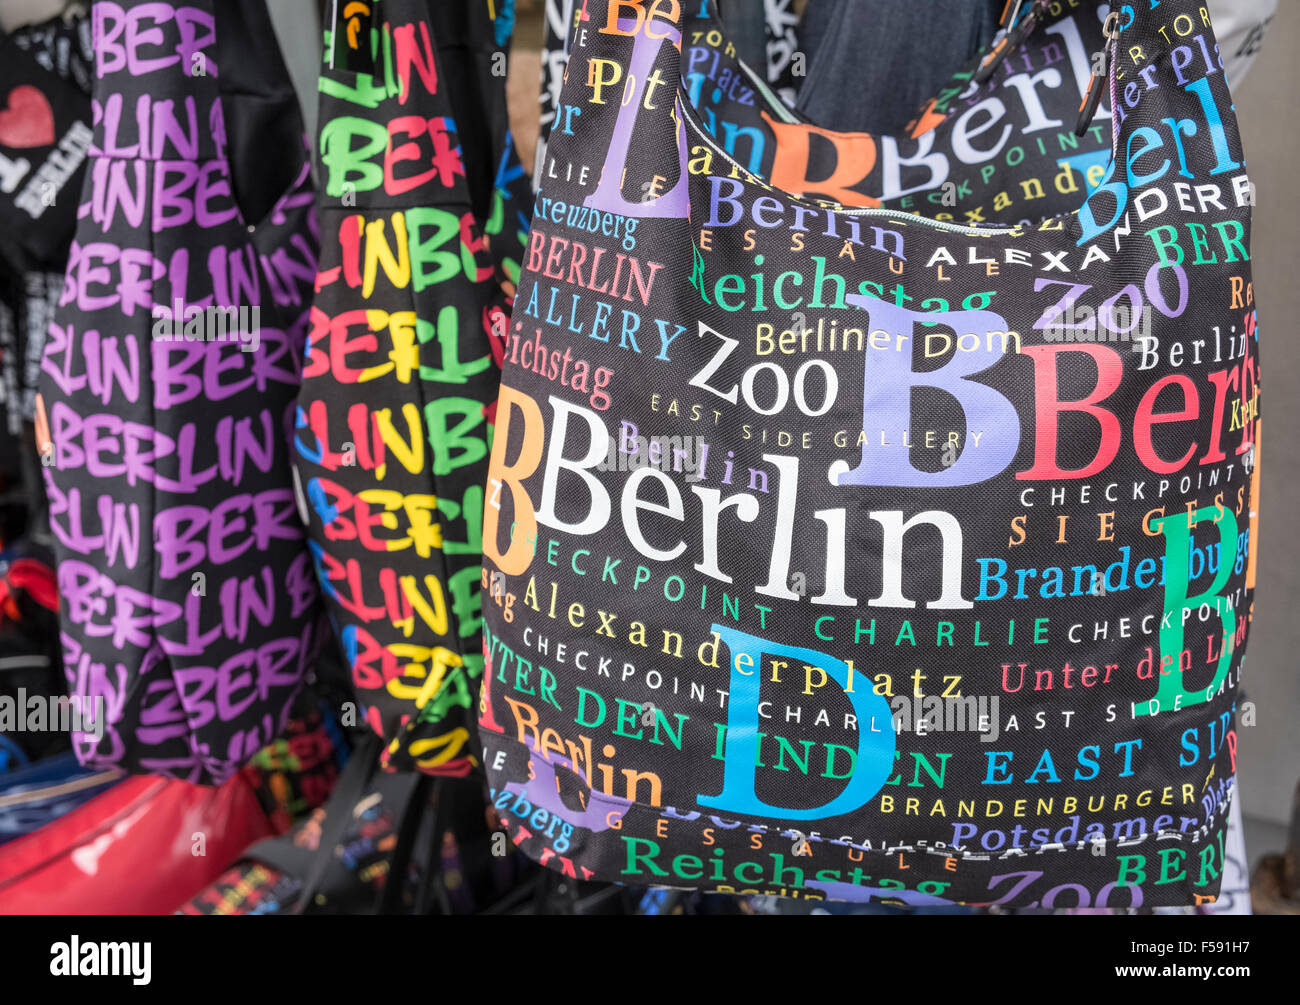 Les sacs pour la vente des souvenirs pour touristes, qui met en évidence des attractions célèbres de Berlin, Allemagne Banque D'Images